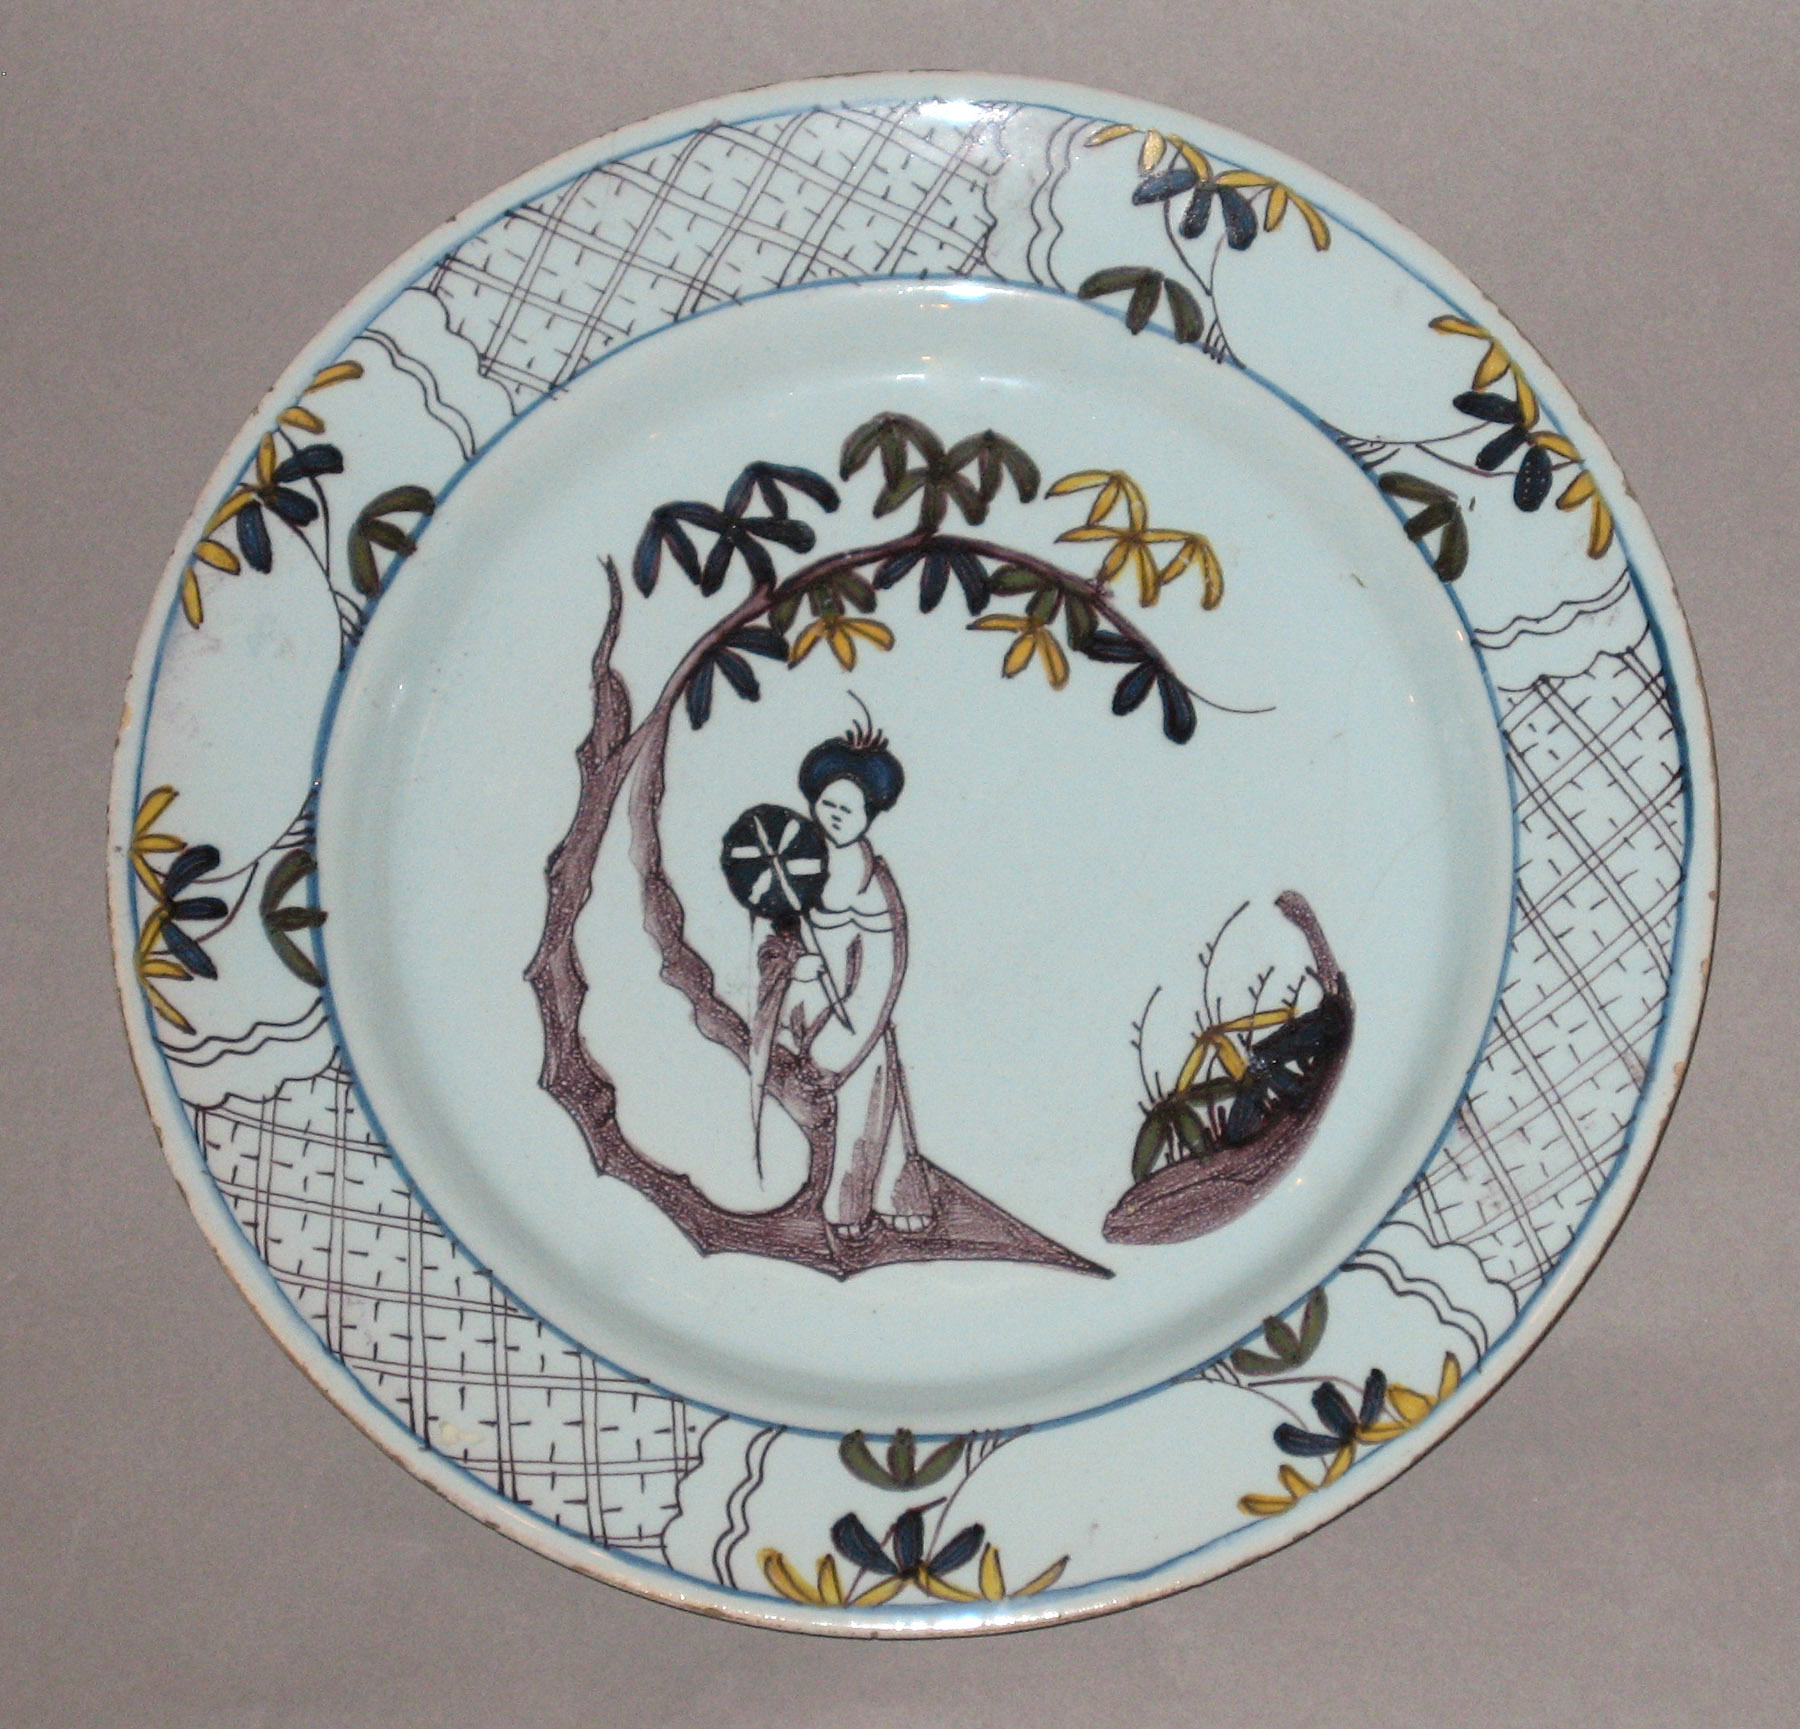 2003.0022.065 Delft plate